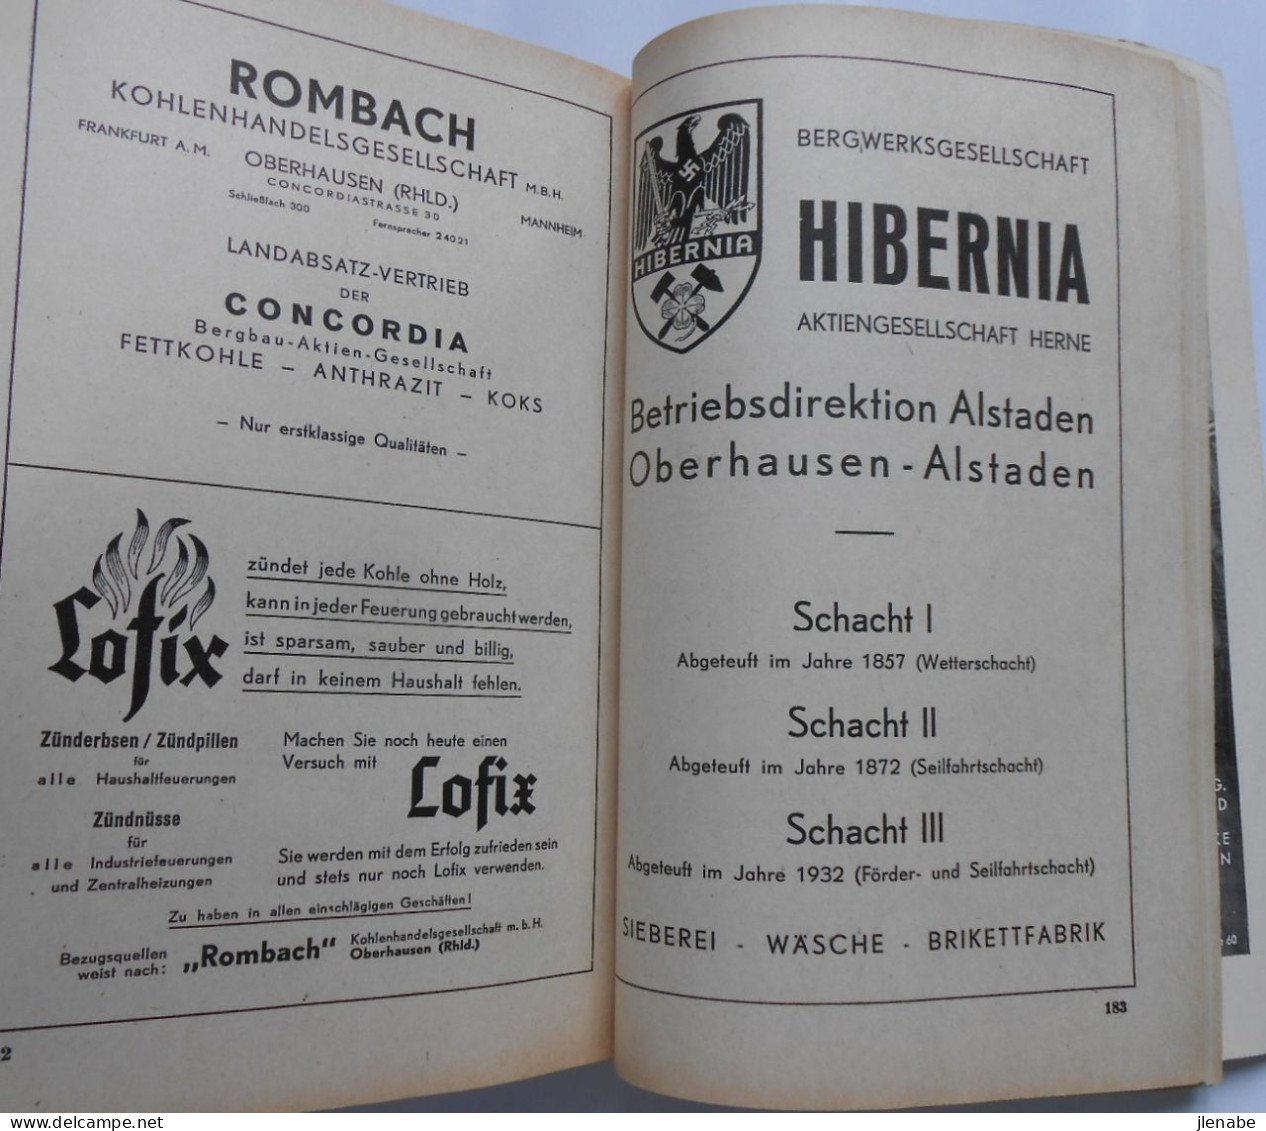 Très rare almanach-original ville de Oberhausen ( Rheinland) de 1941 - en langue allemande